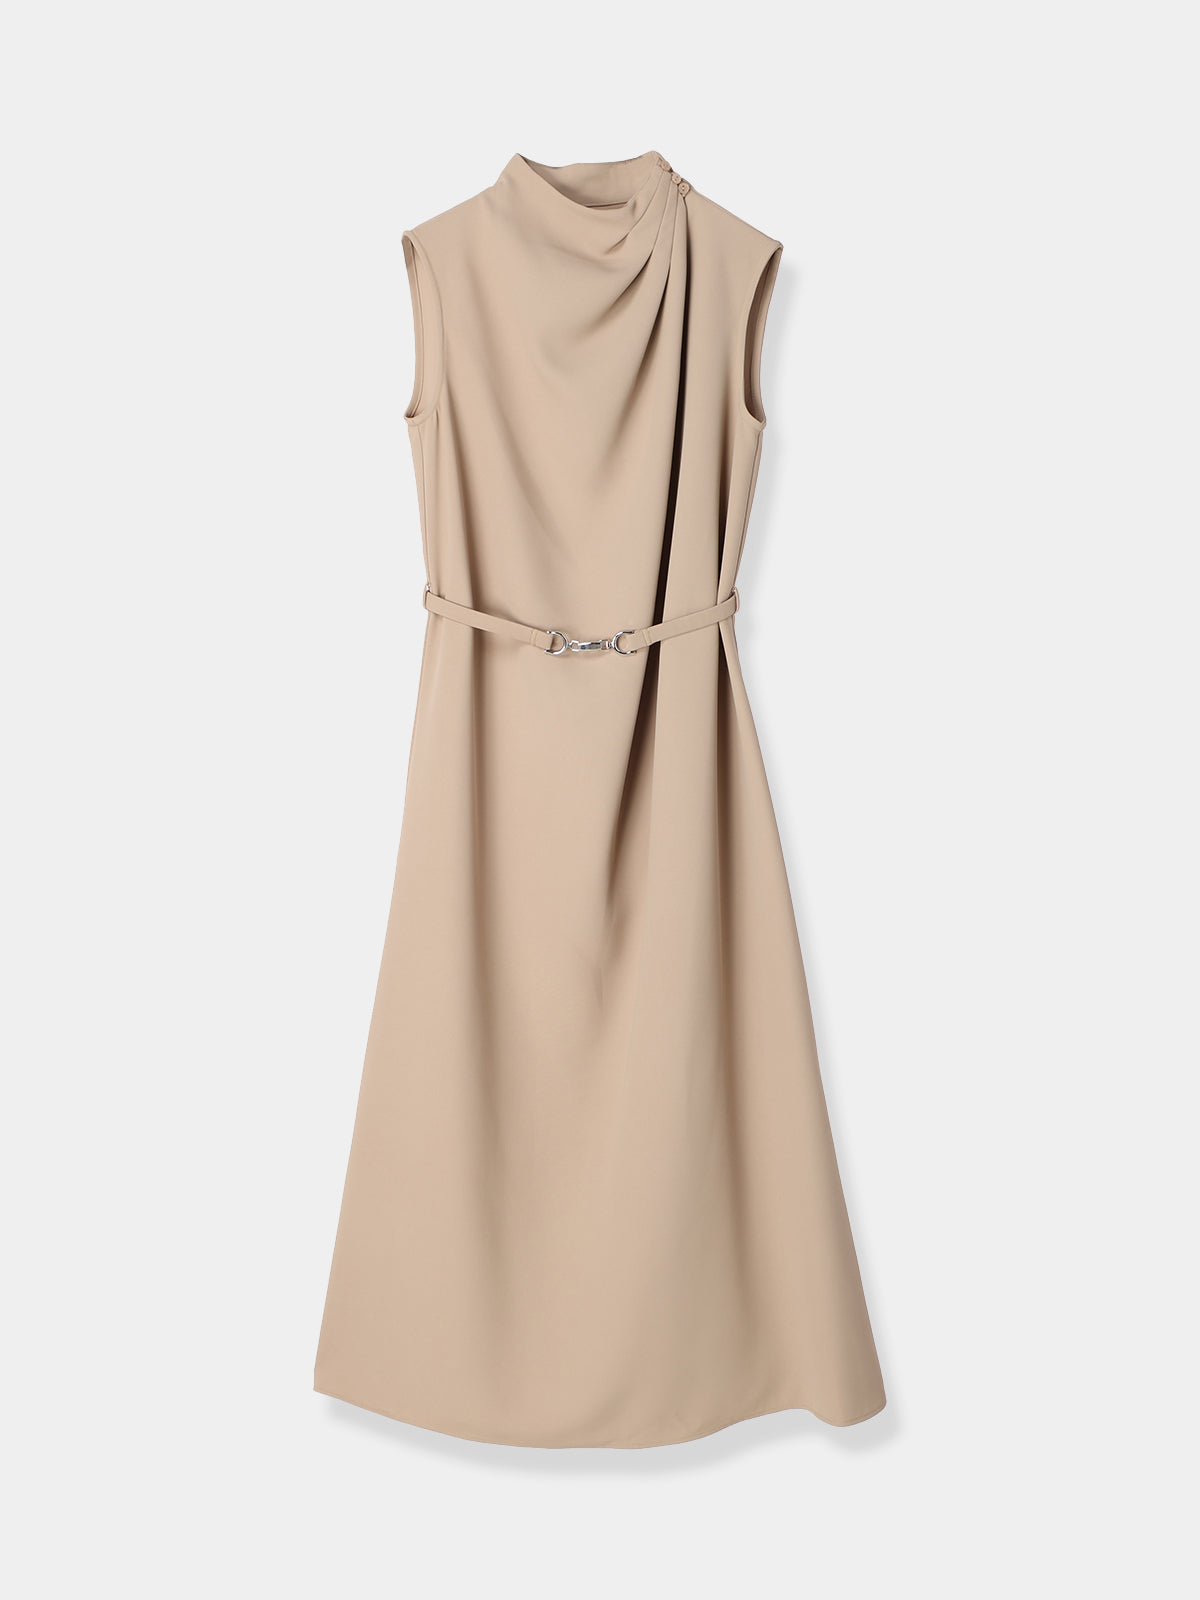 【新品未使用】L'Or Belted Pleats Dress beige440cmベルト